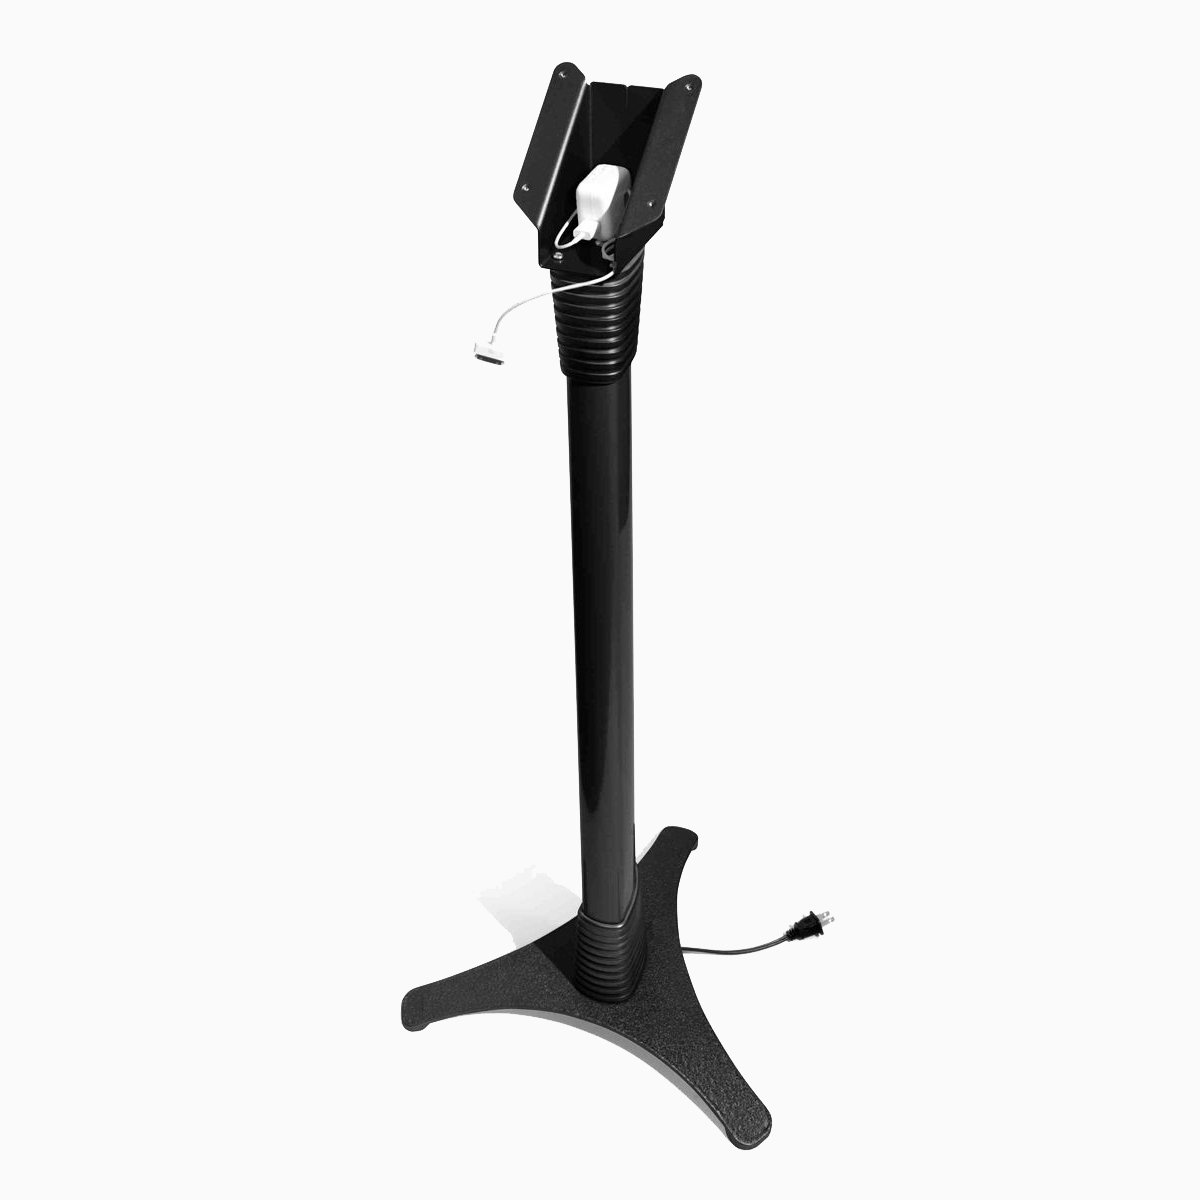 Maclocks Portable Floor Stand with VESA mount – Adjustable Floor Stand